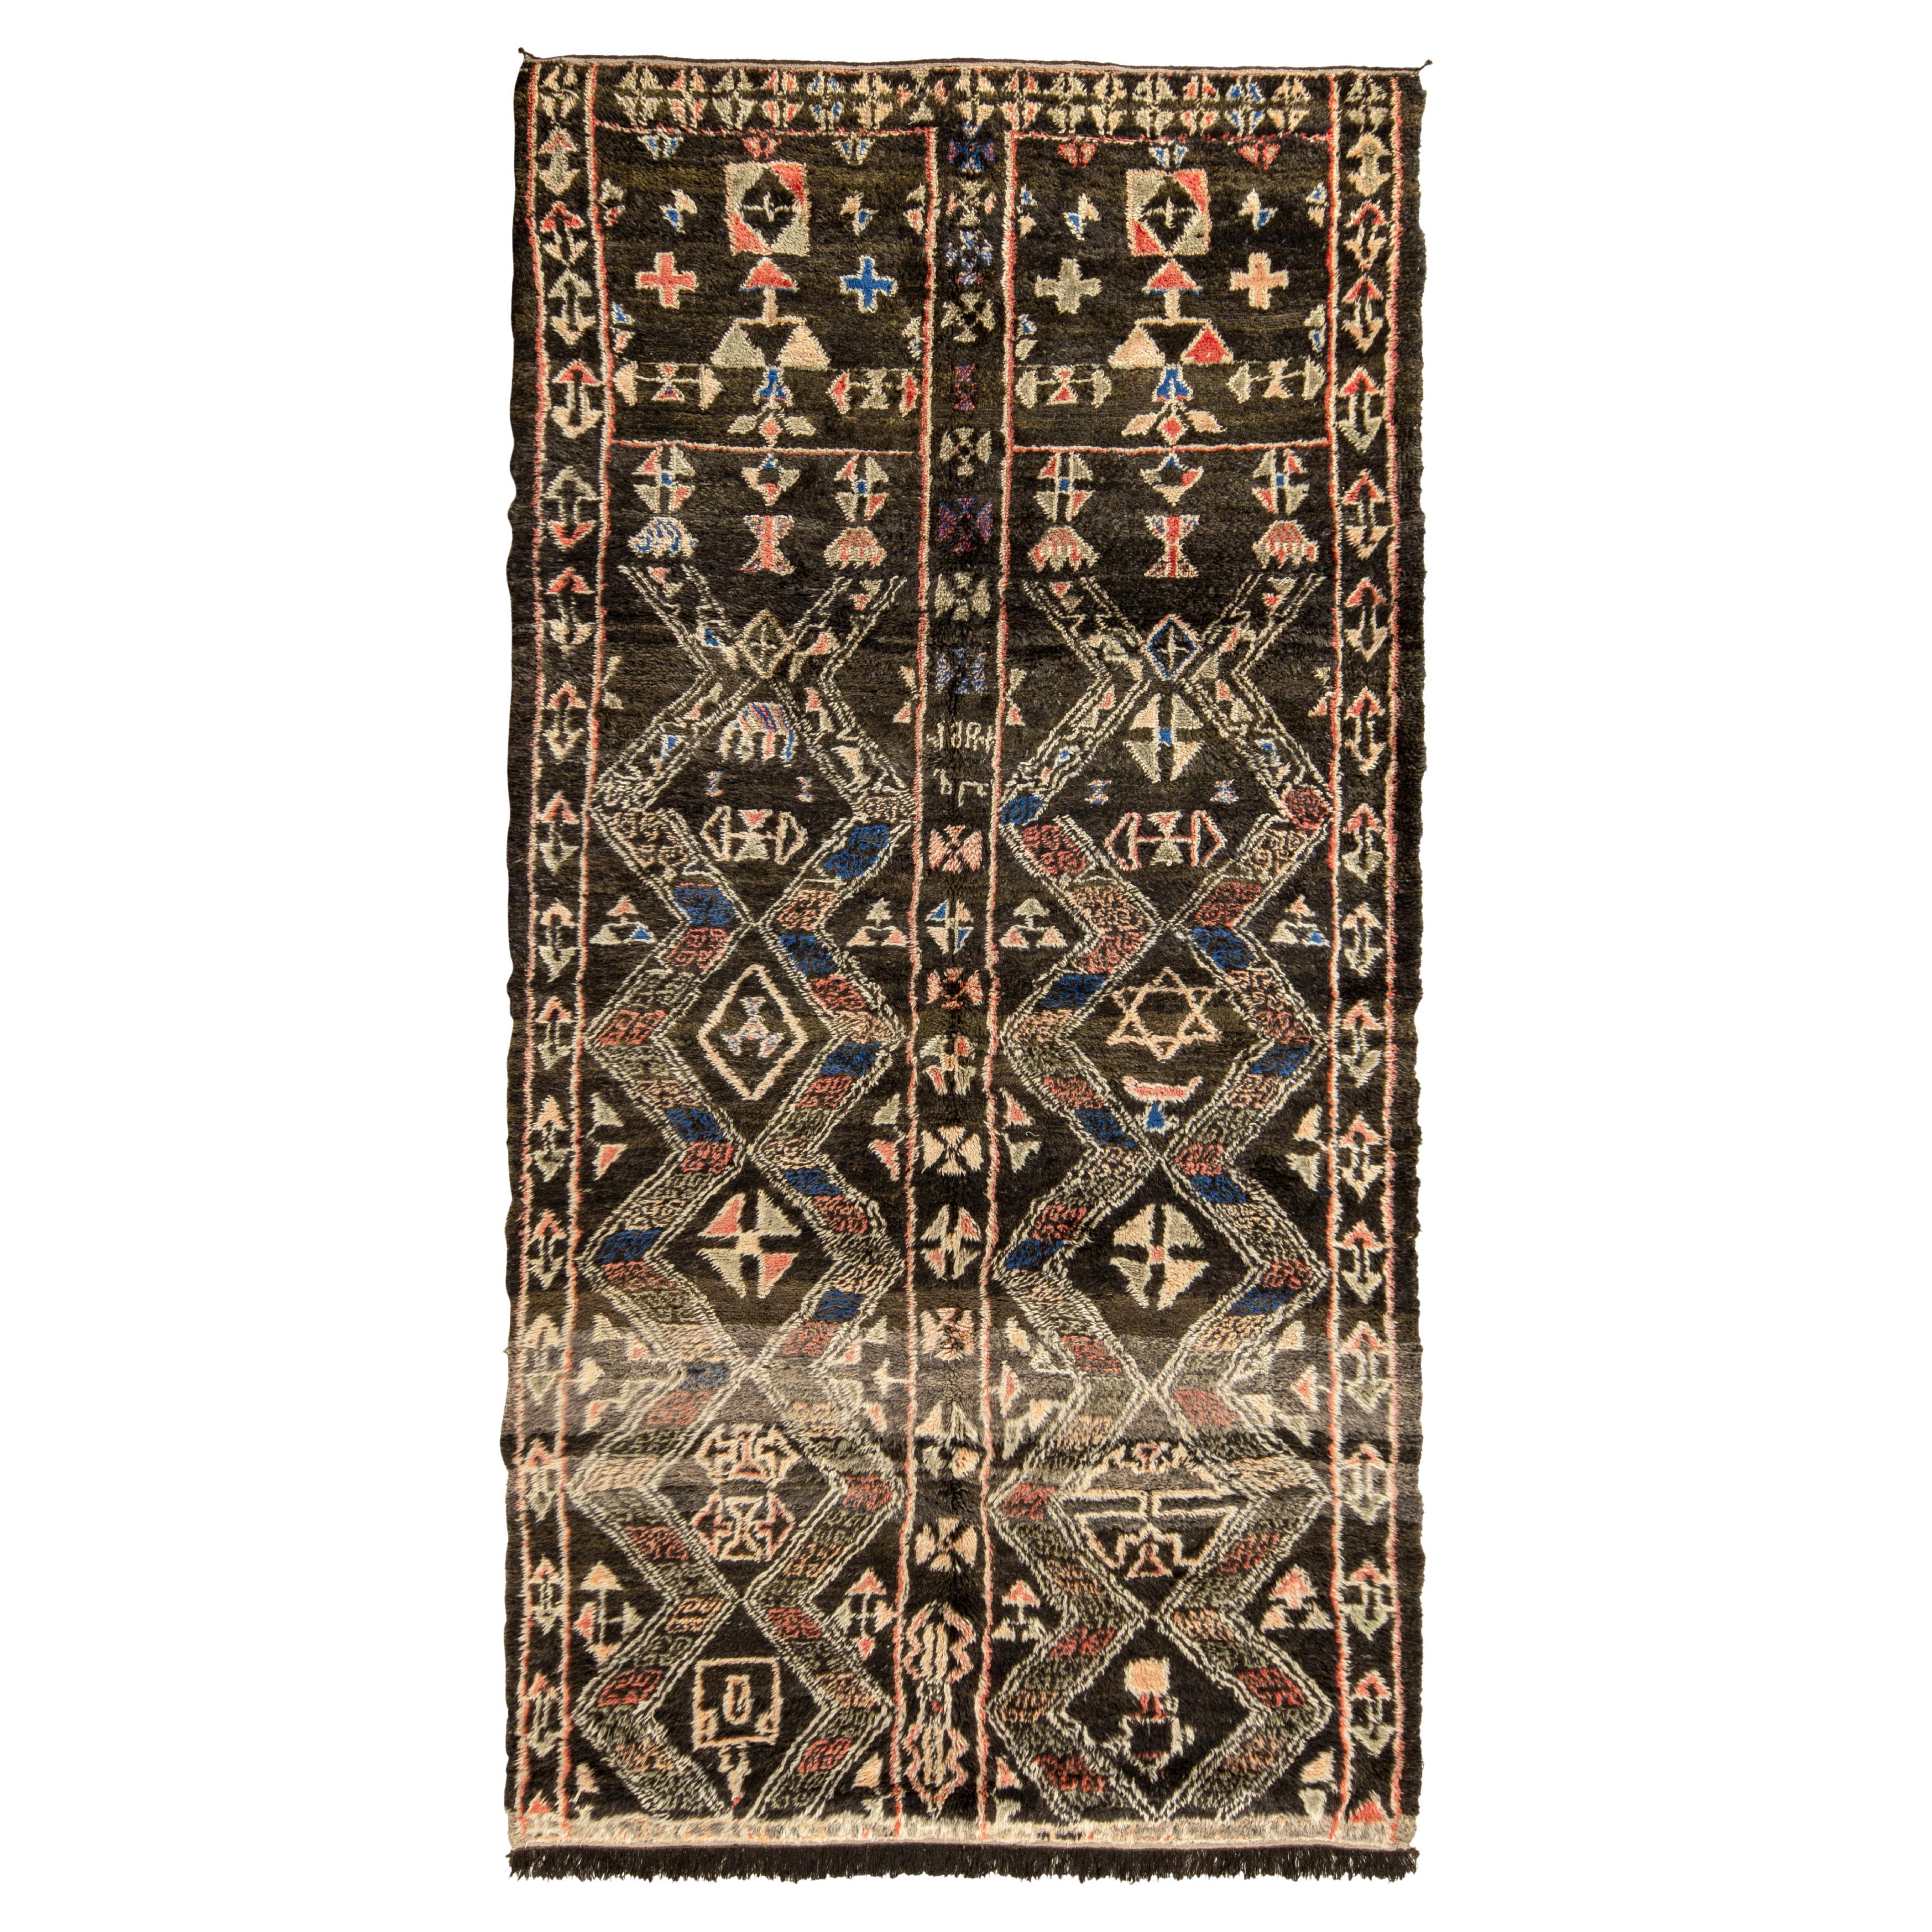 Marokkanischer Teppich in Beige-Braun, Rot mit geometrischem Muster von Teppich & Kelim